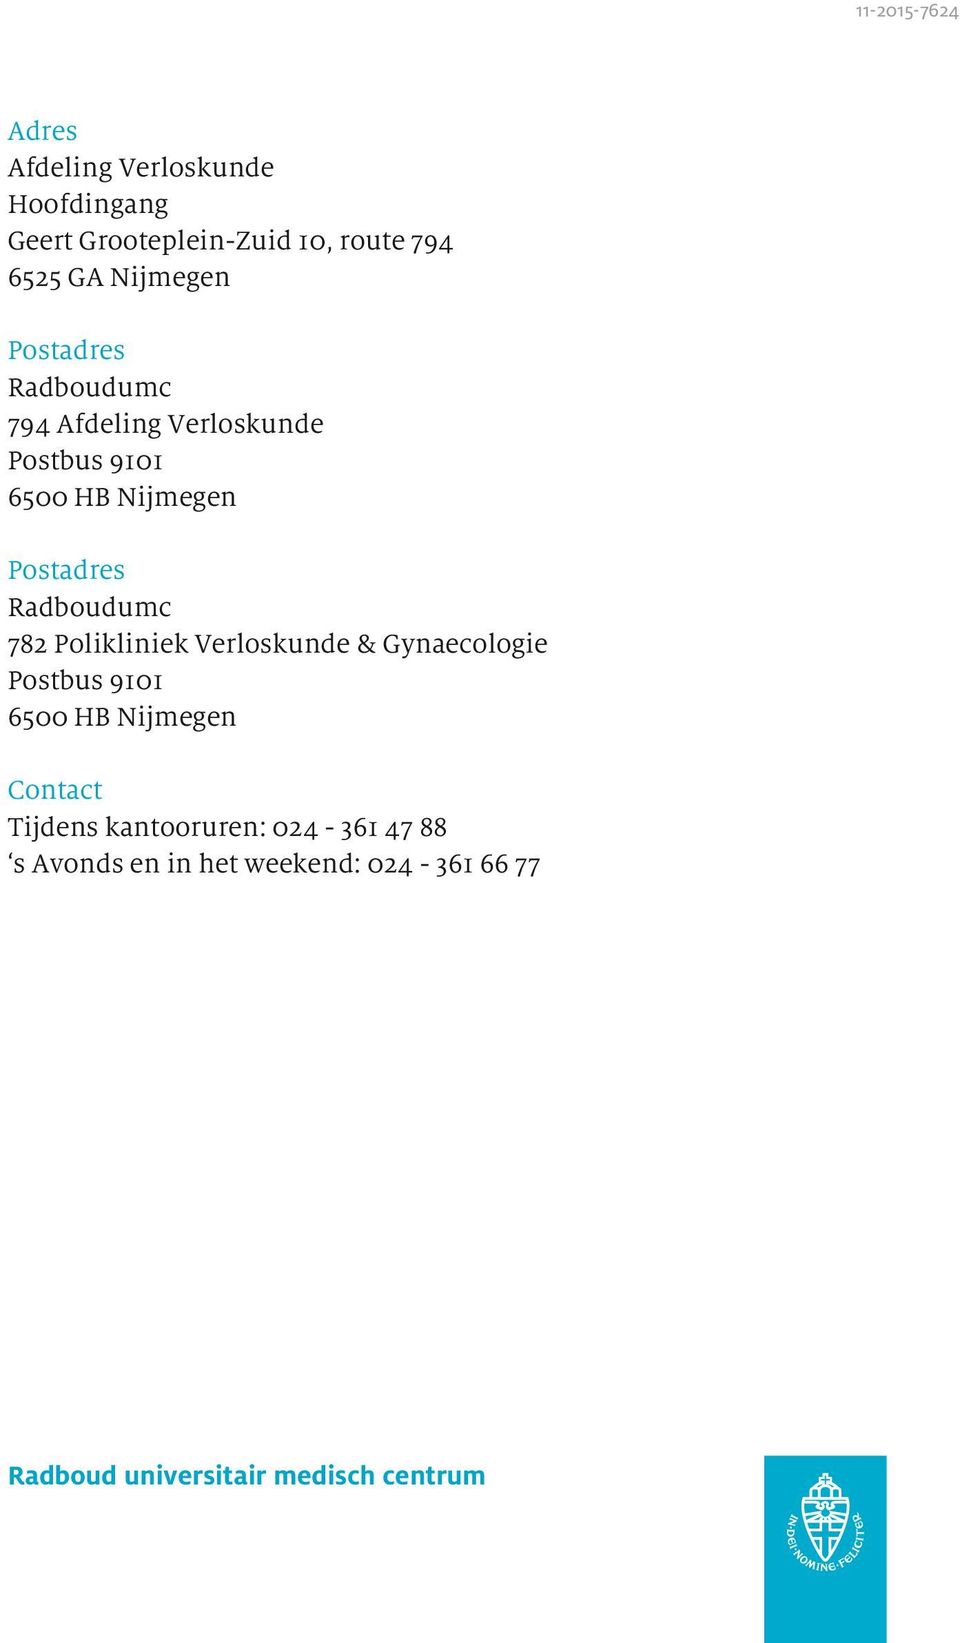 Radboudumc 782 Polikliniek Verloskunde & Gynaecologie Postbus 9101 6500 HB Nijmegen Contact Tijdens